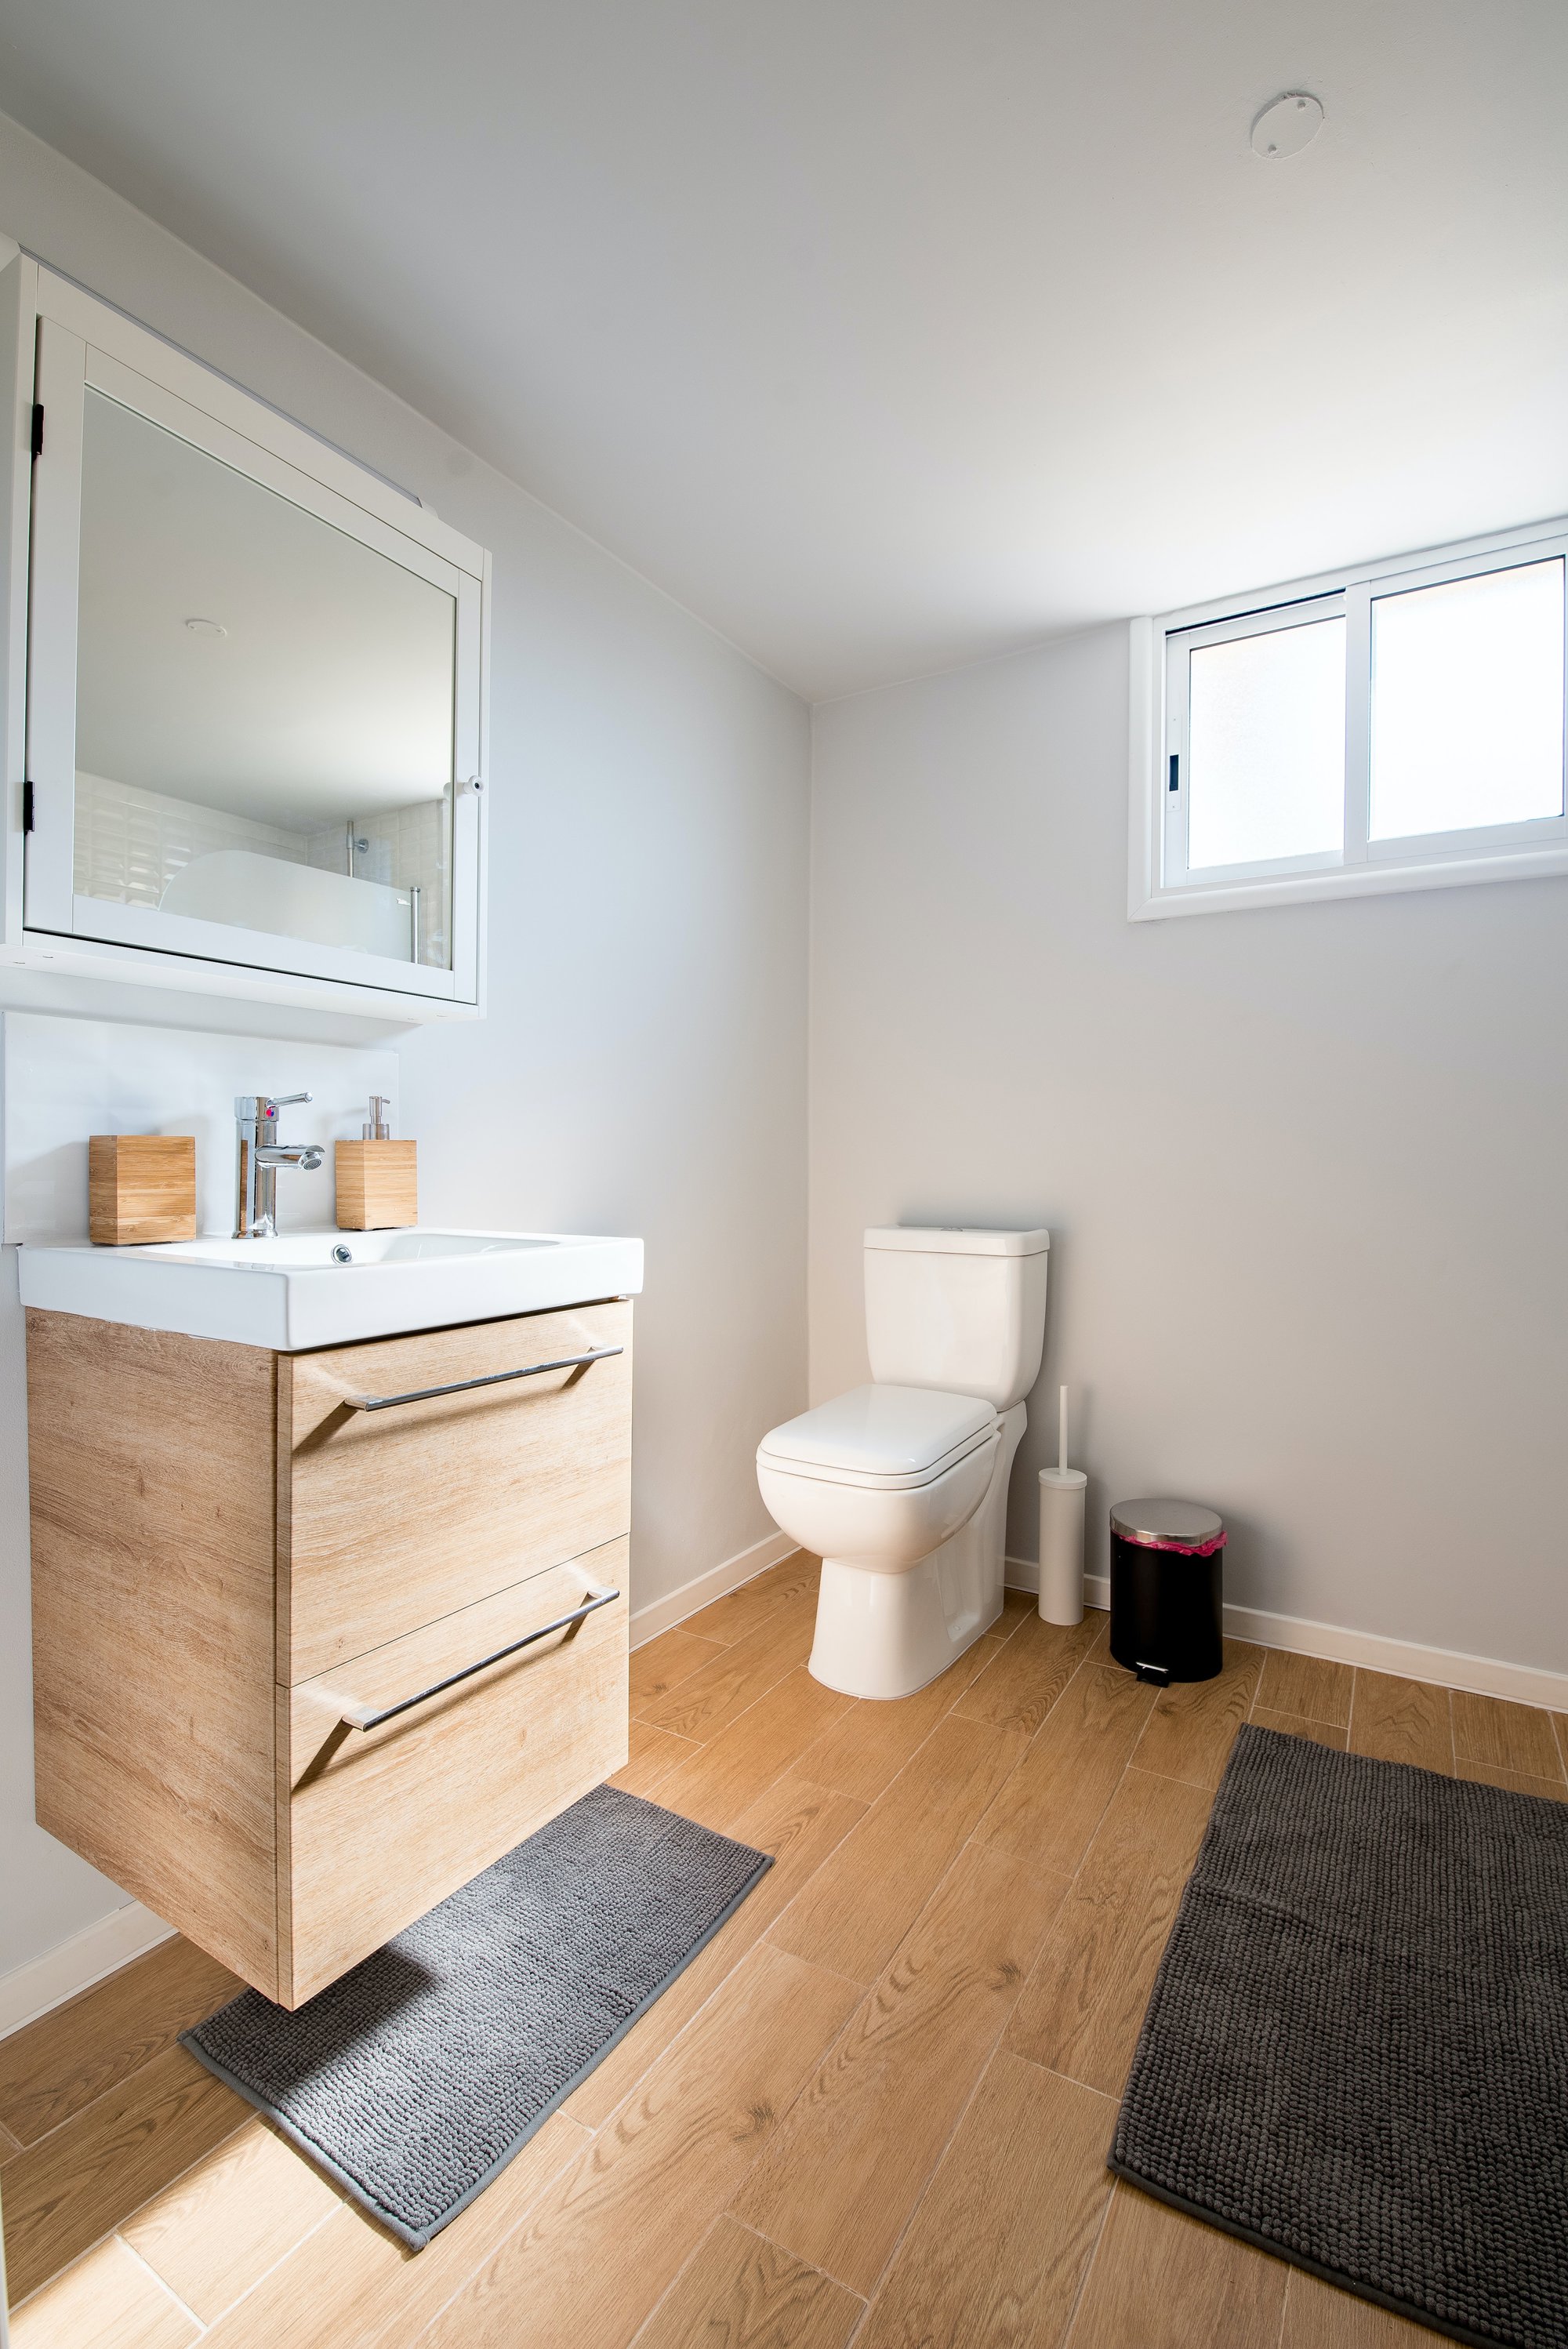 15 ideas ingeniosas para ganar espacio de almacenamiento en baños pequeños